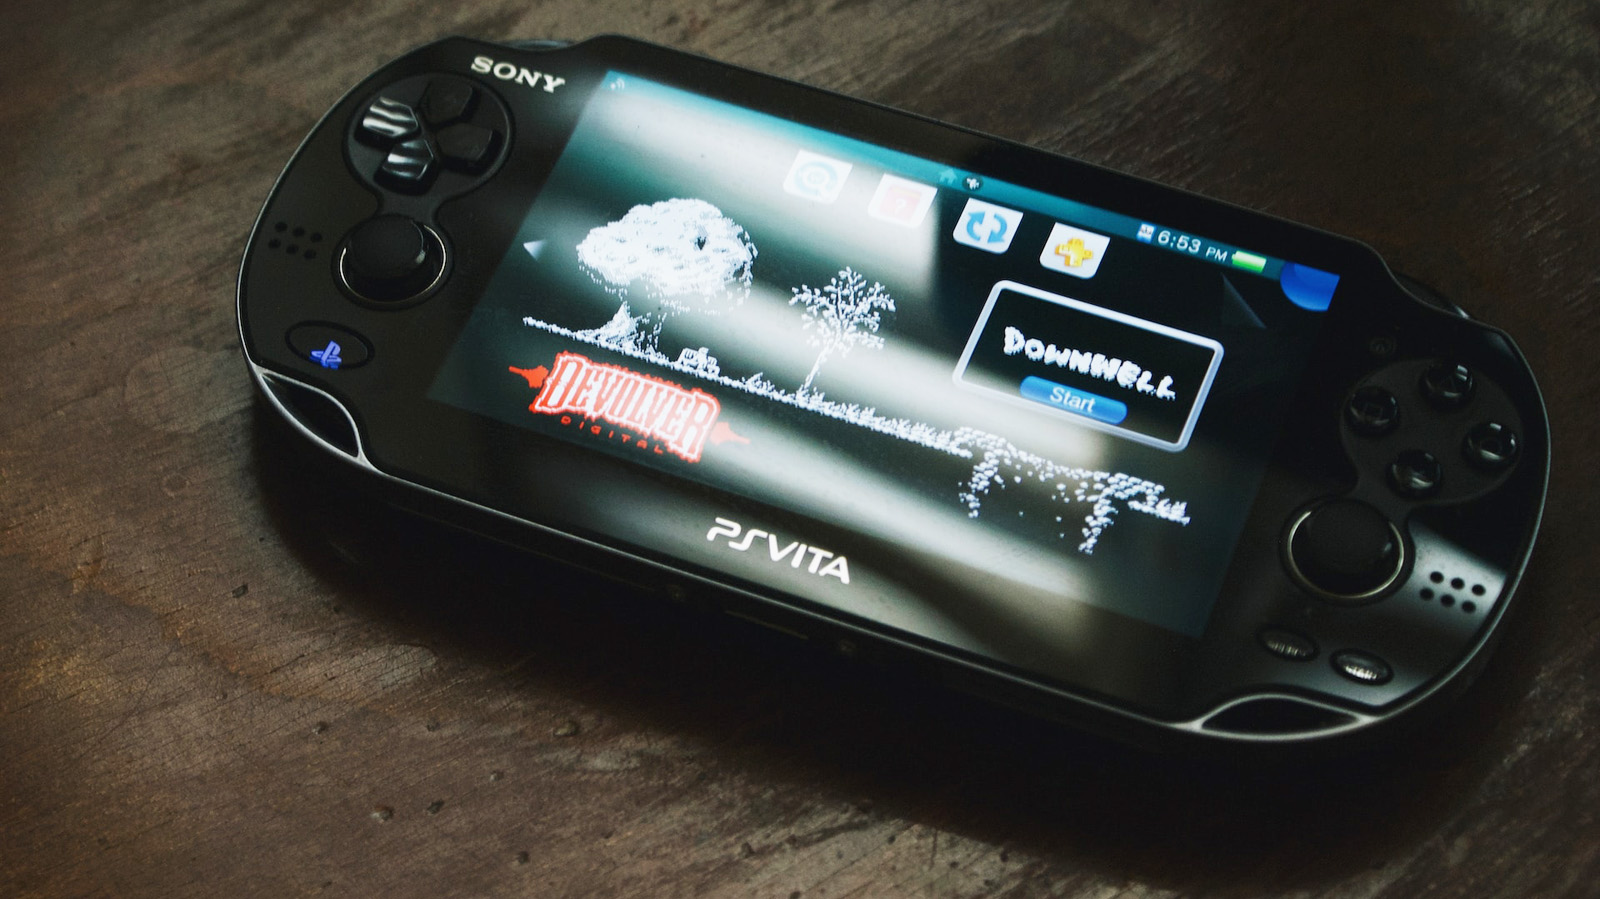 Sony's Next-Gen Handheld Console - Q-Lite